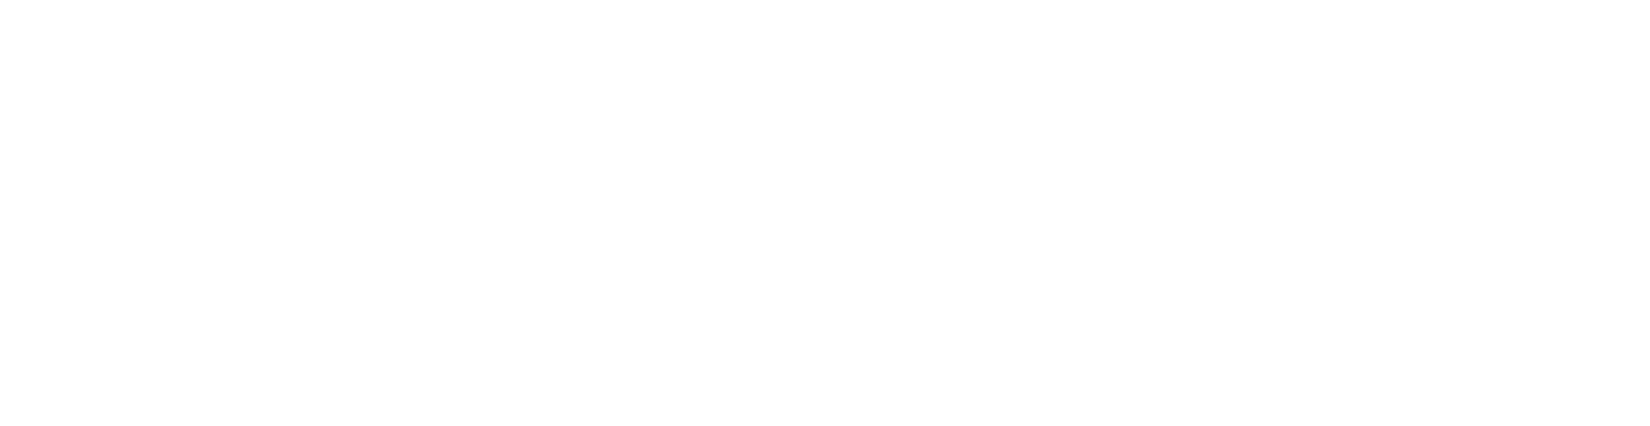 Premier_Partner_1ln_wht